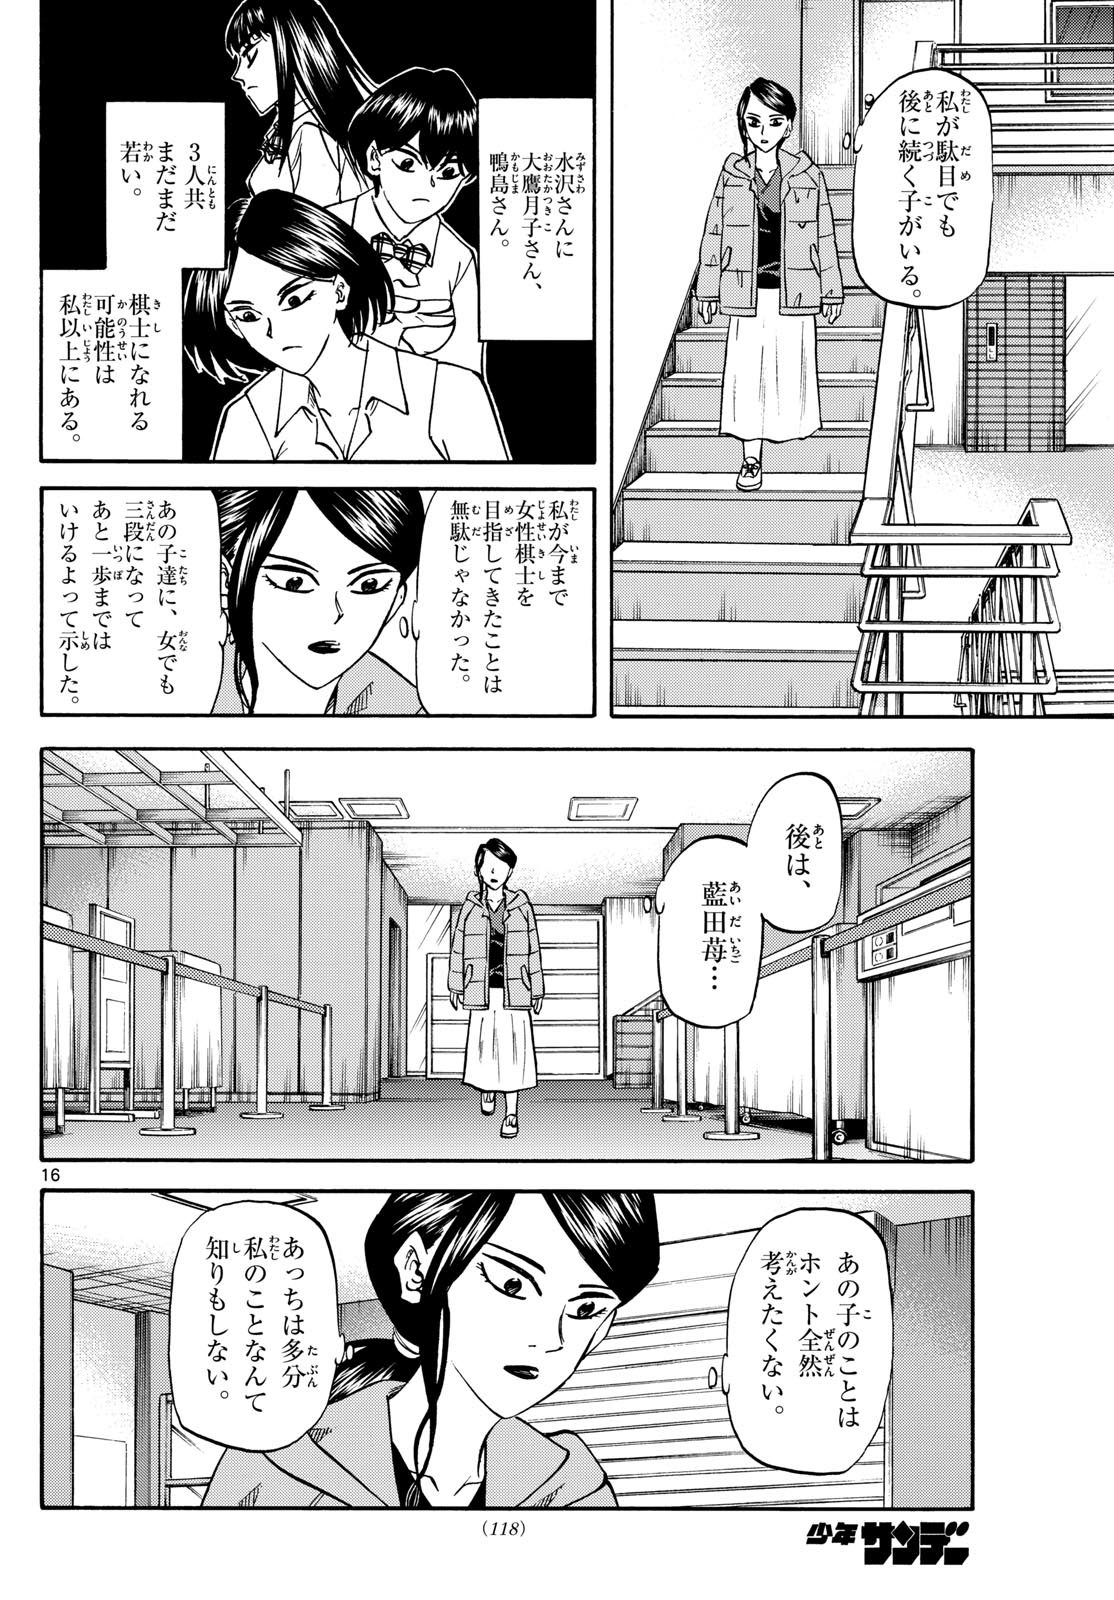 Tatsu to Ichigo - Chapter 172 - Page 16